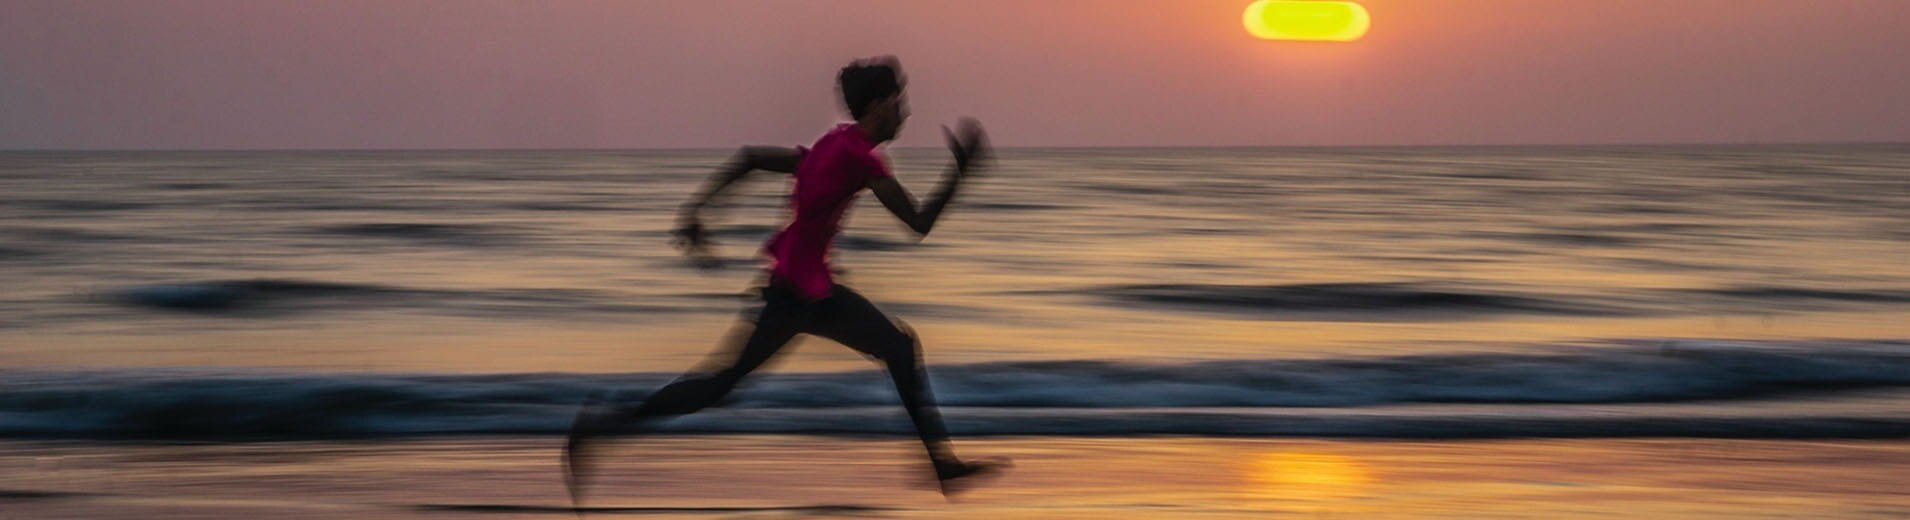 Man_Running_on beach_S_1033